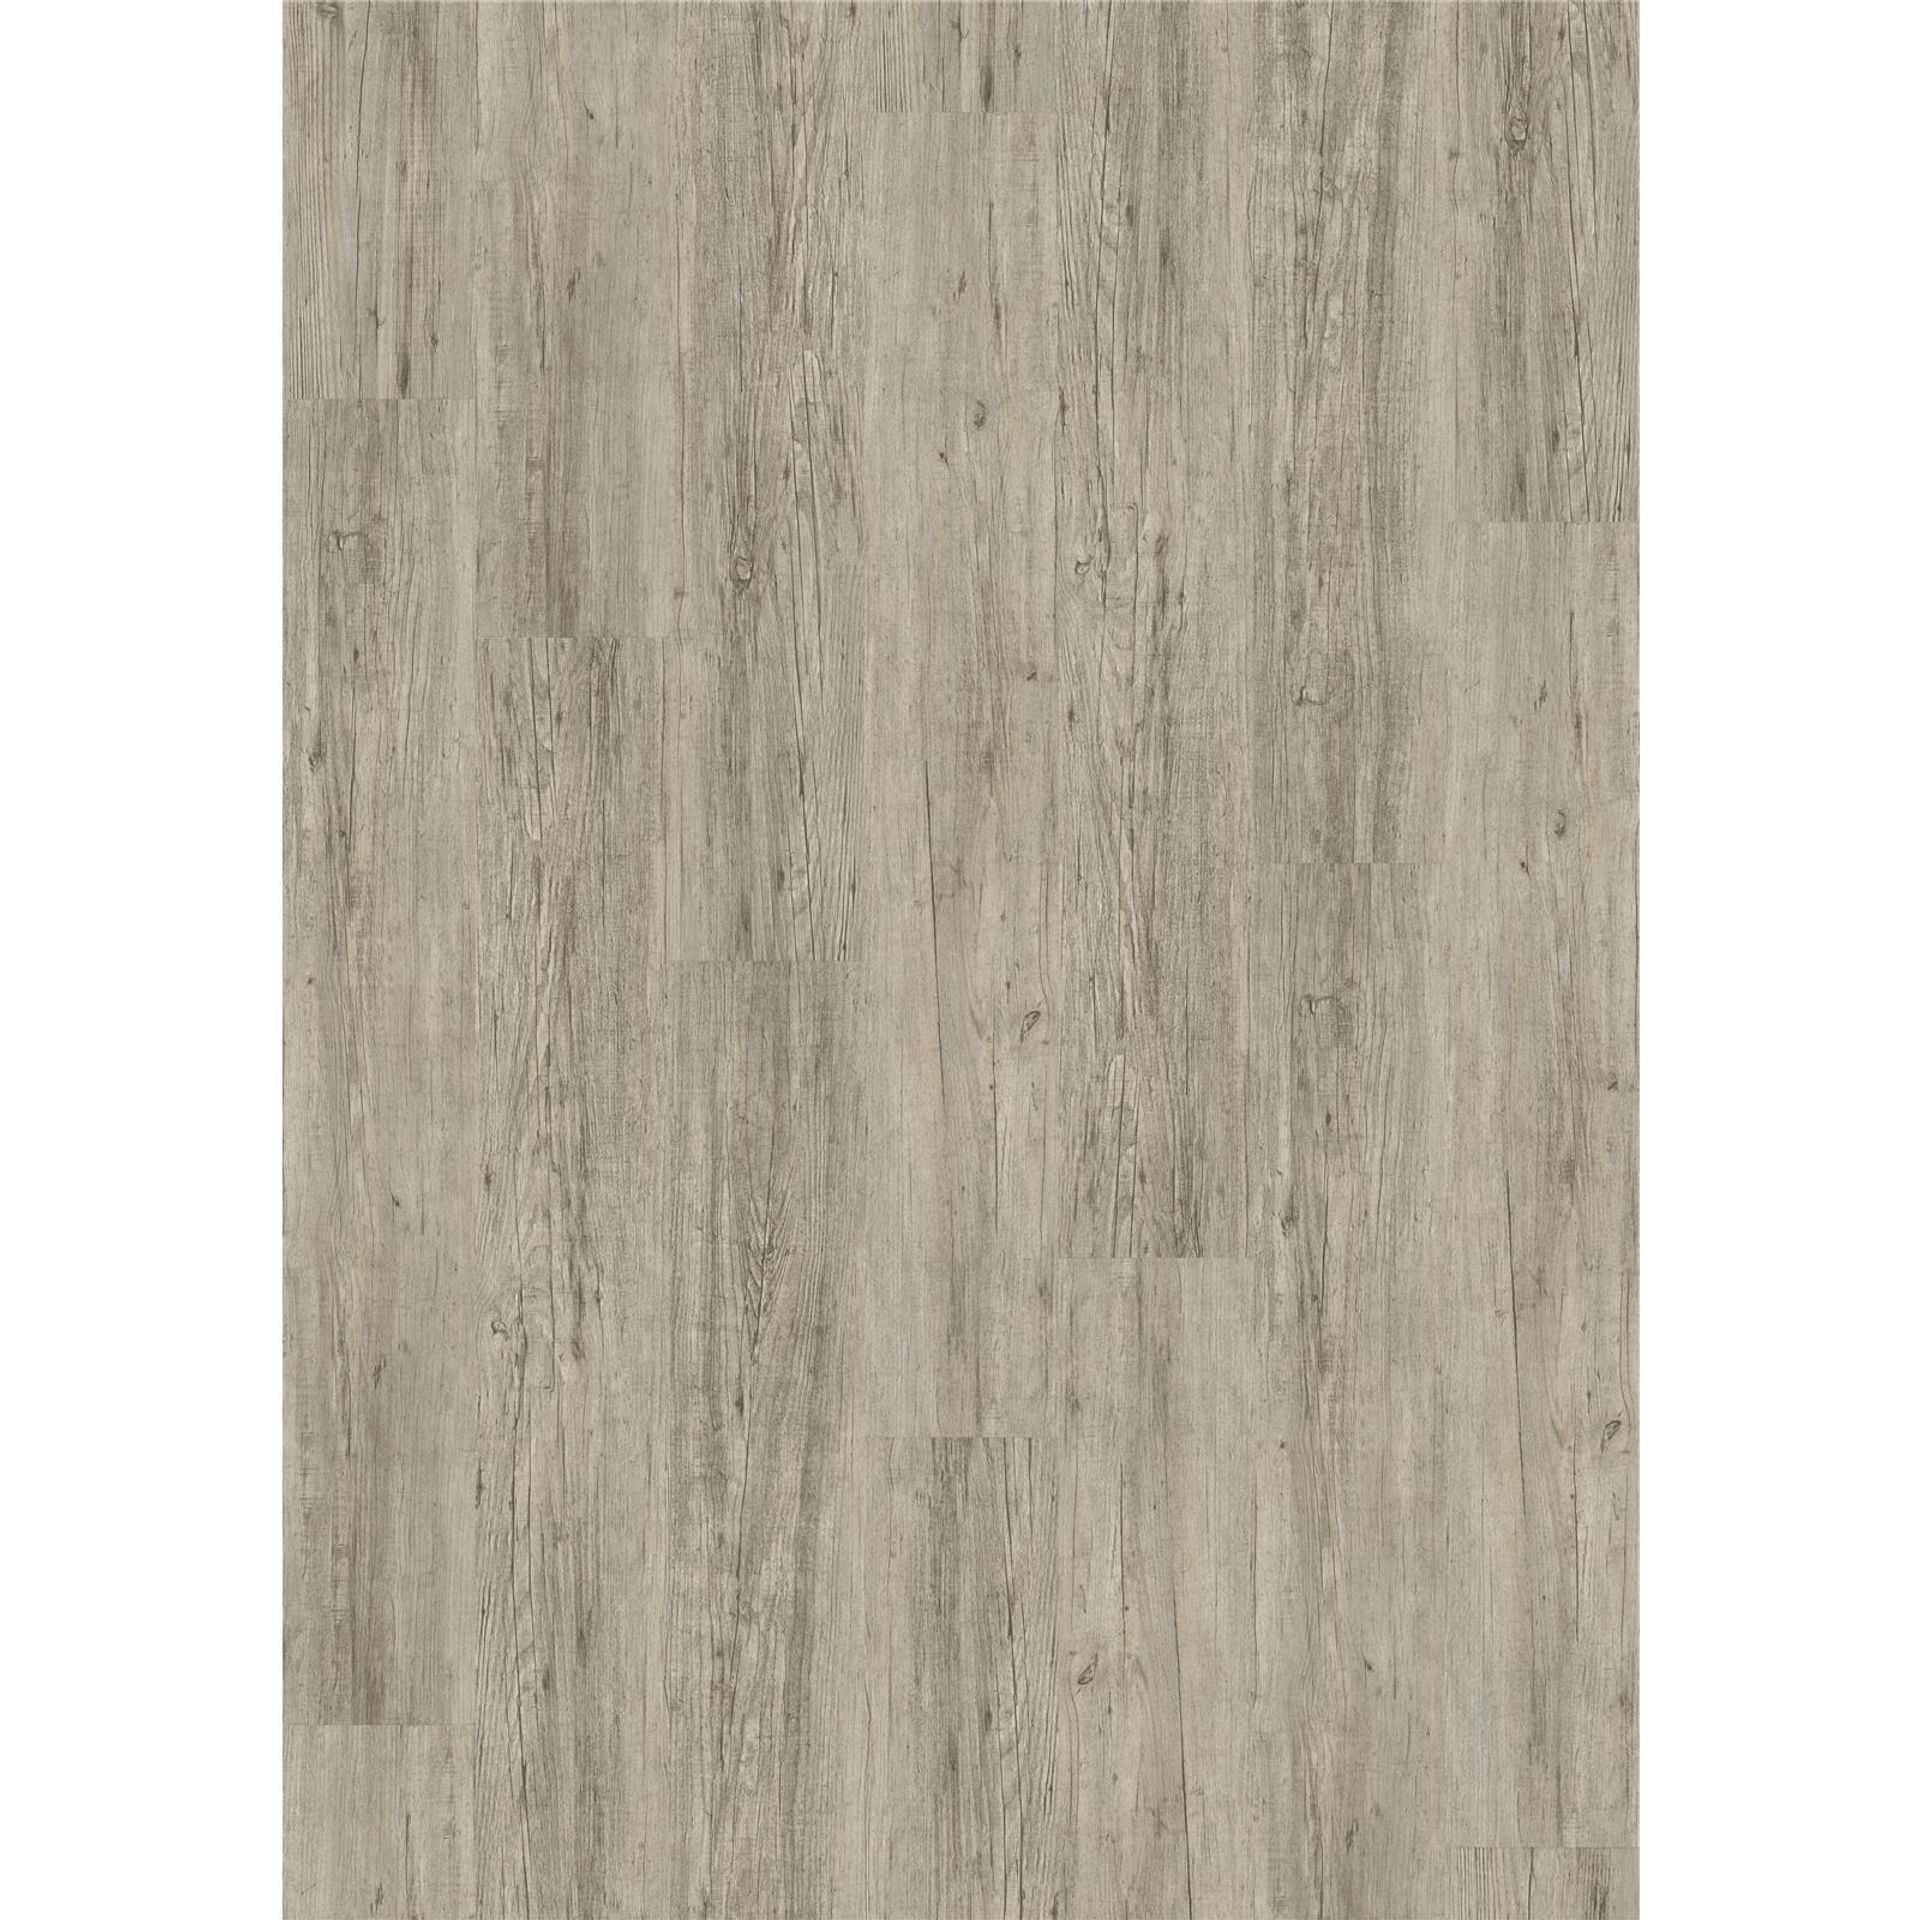 Designboden Dryback 2834 Grey Pine - Planke 18,42 cm x 121,92 cm - Nutzschichtdicke 0,4 mm